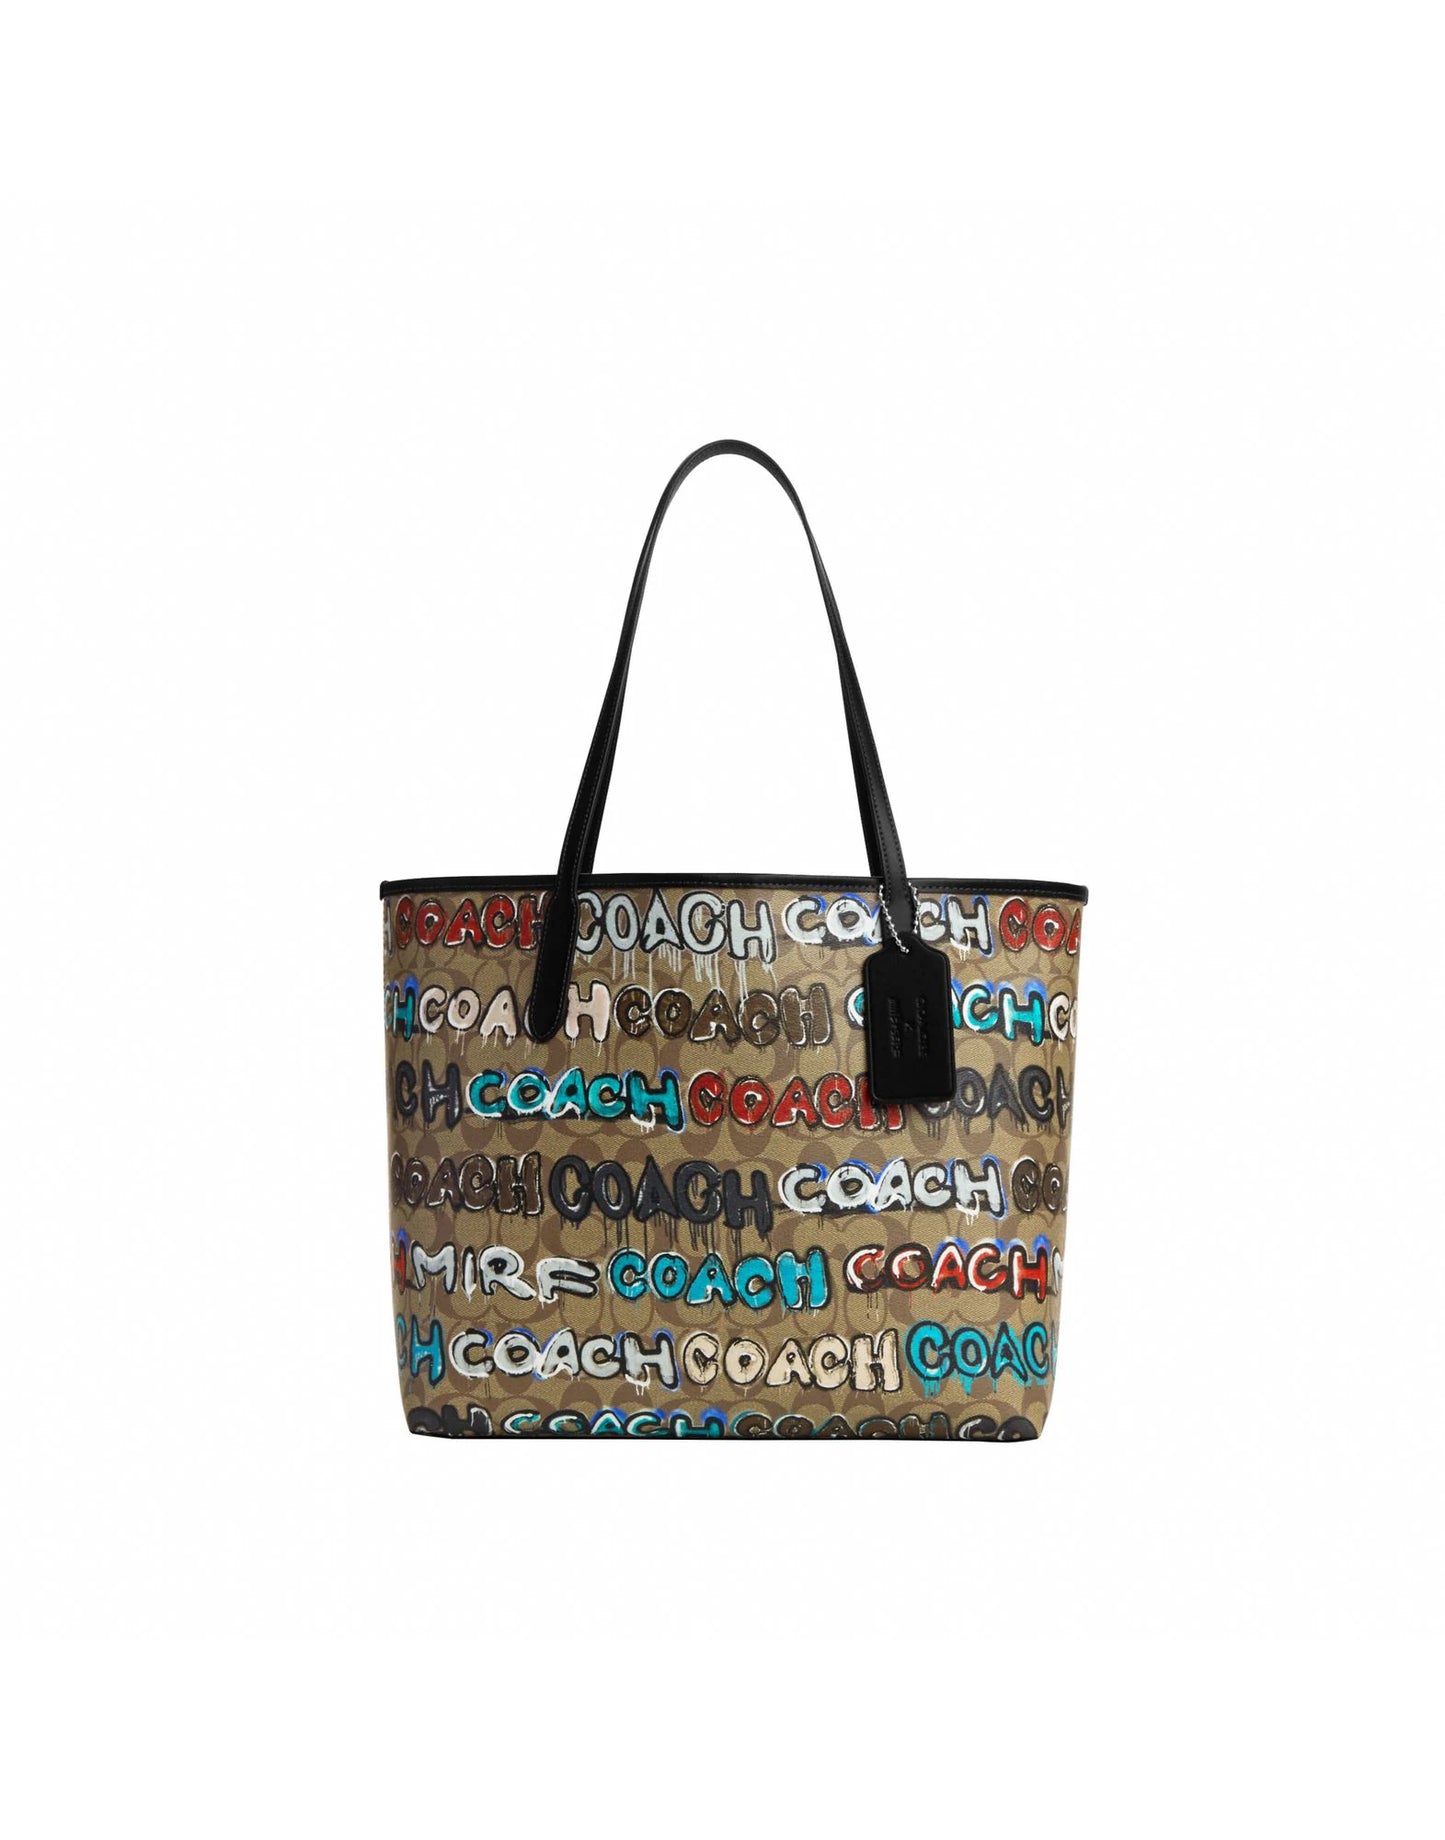 PARIOLI BAGS - Coach Handbag -Fantasy Leather